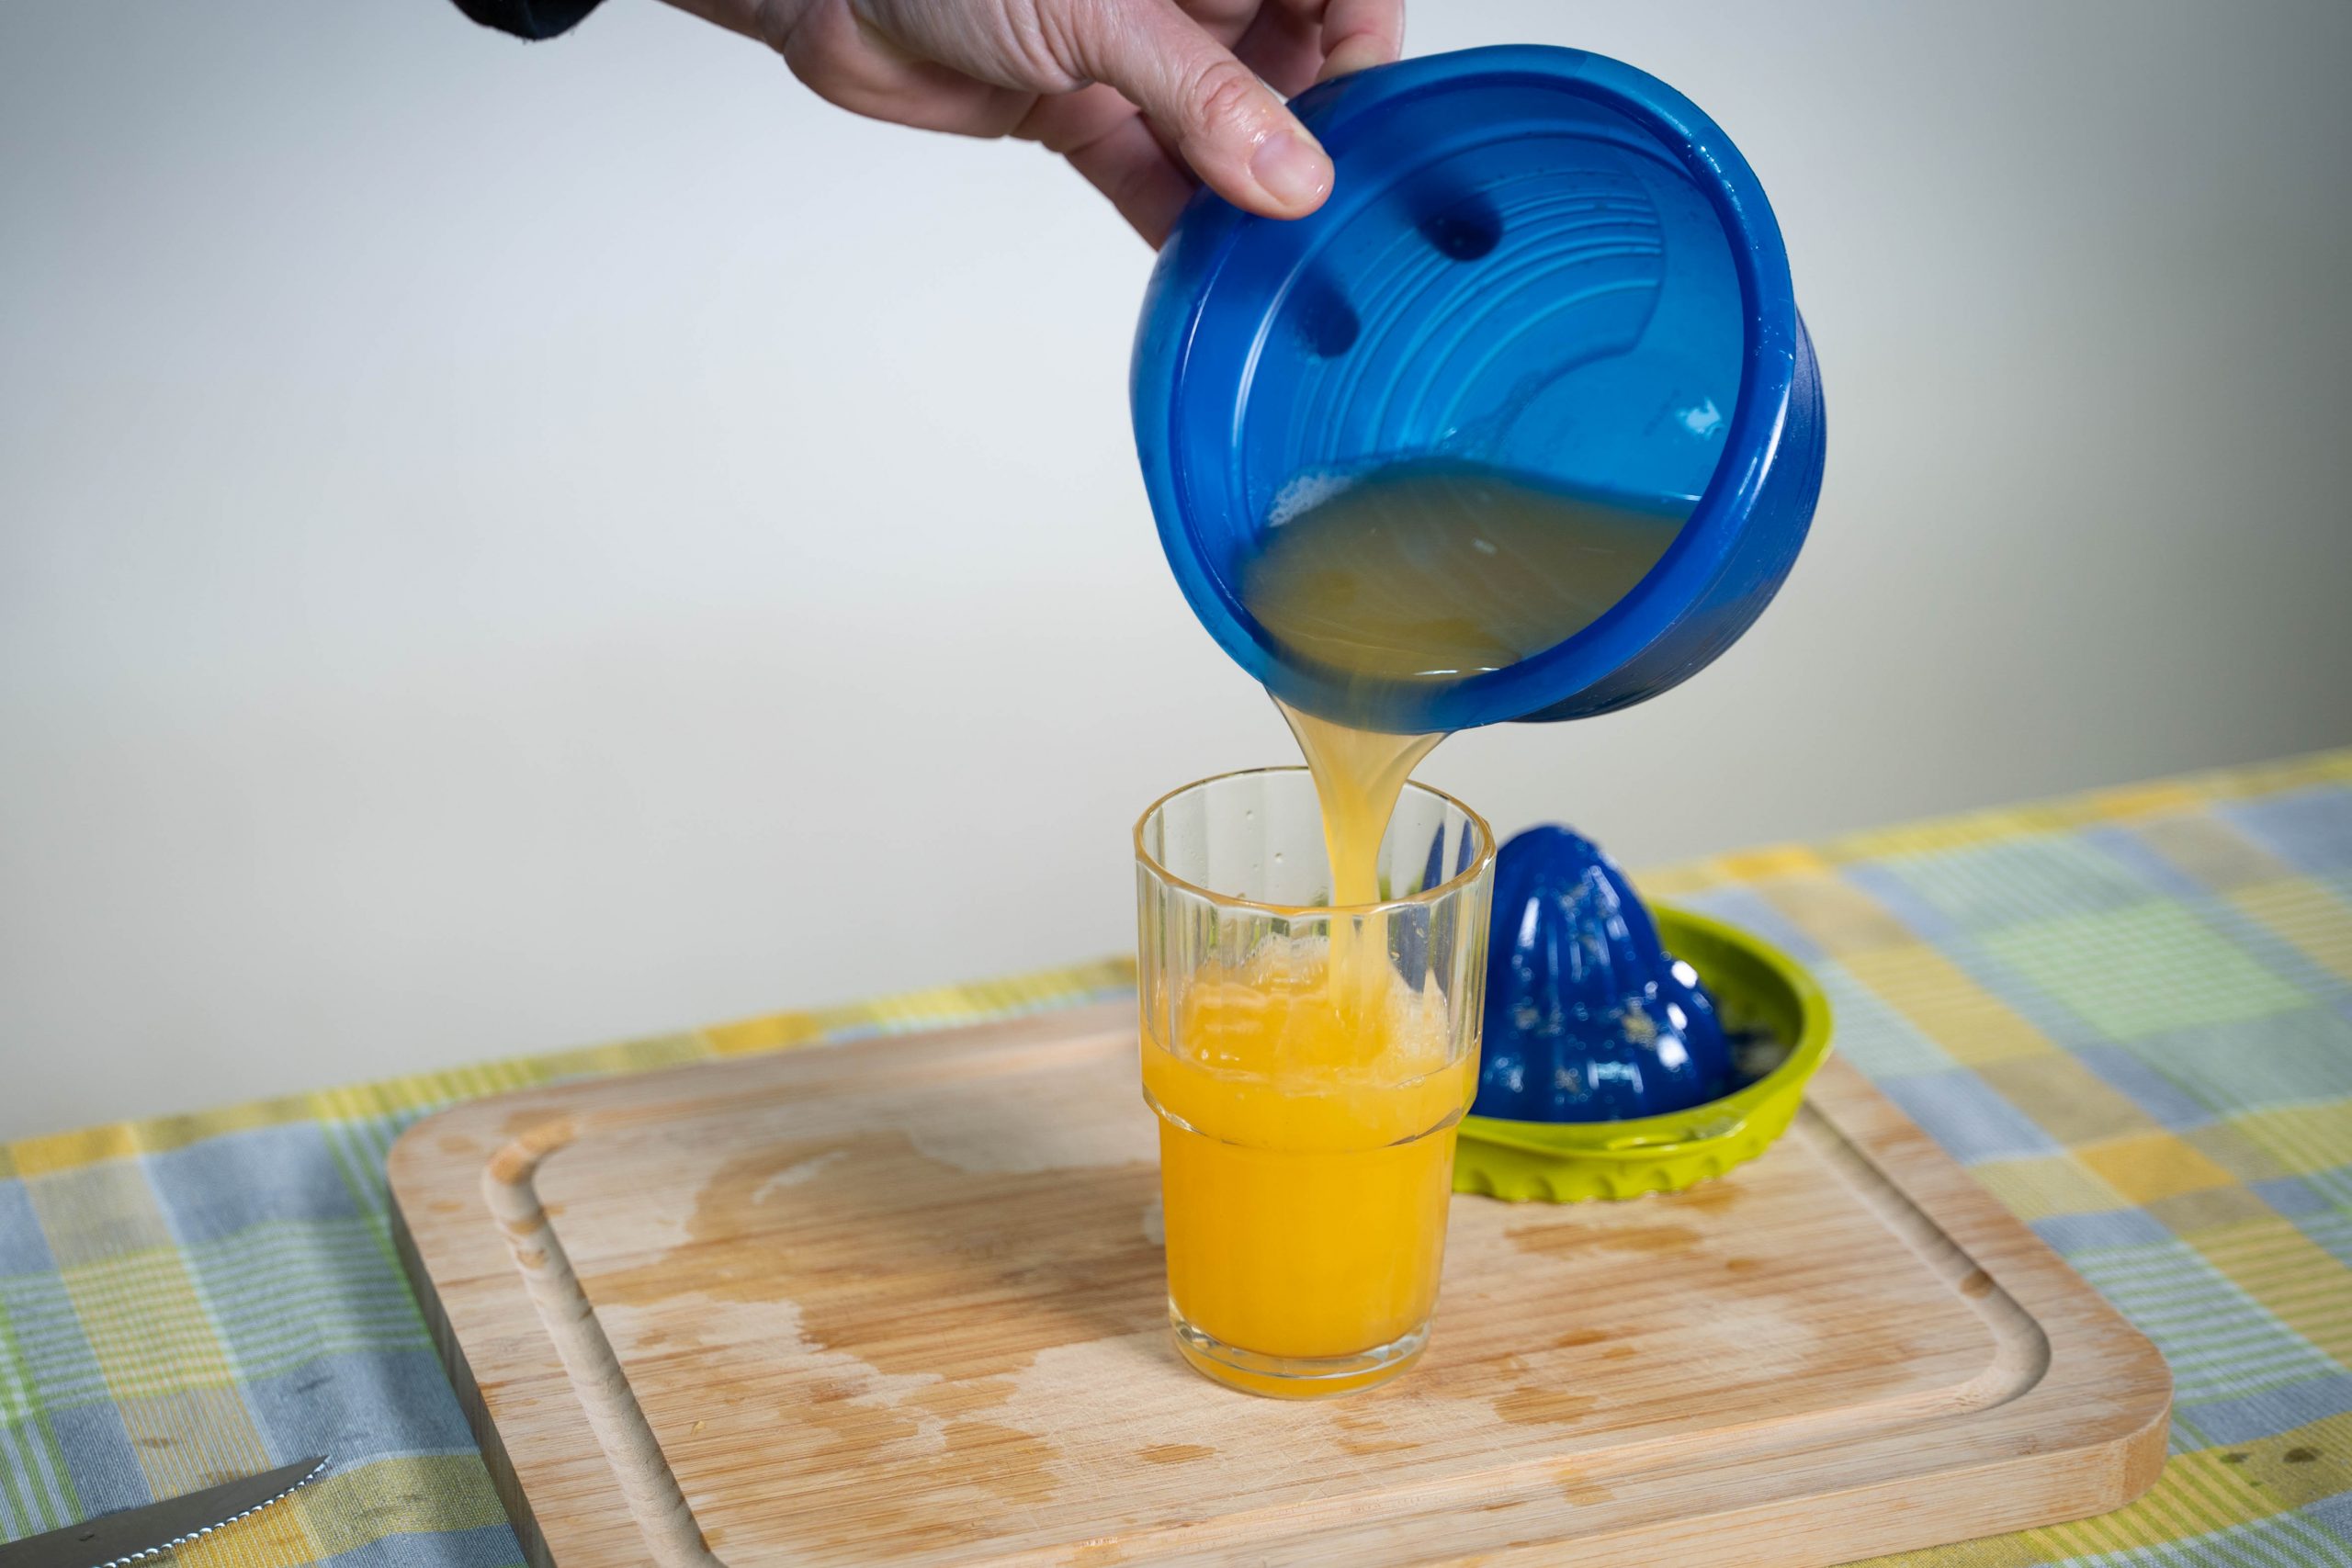 .שולחן עם קרש חיתוך ועליו כוס עם מיץ תפוזים. מעל הכוס יש יד ששופכת ממסחטה מיץ לכוס